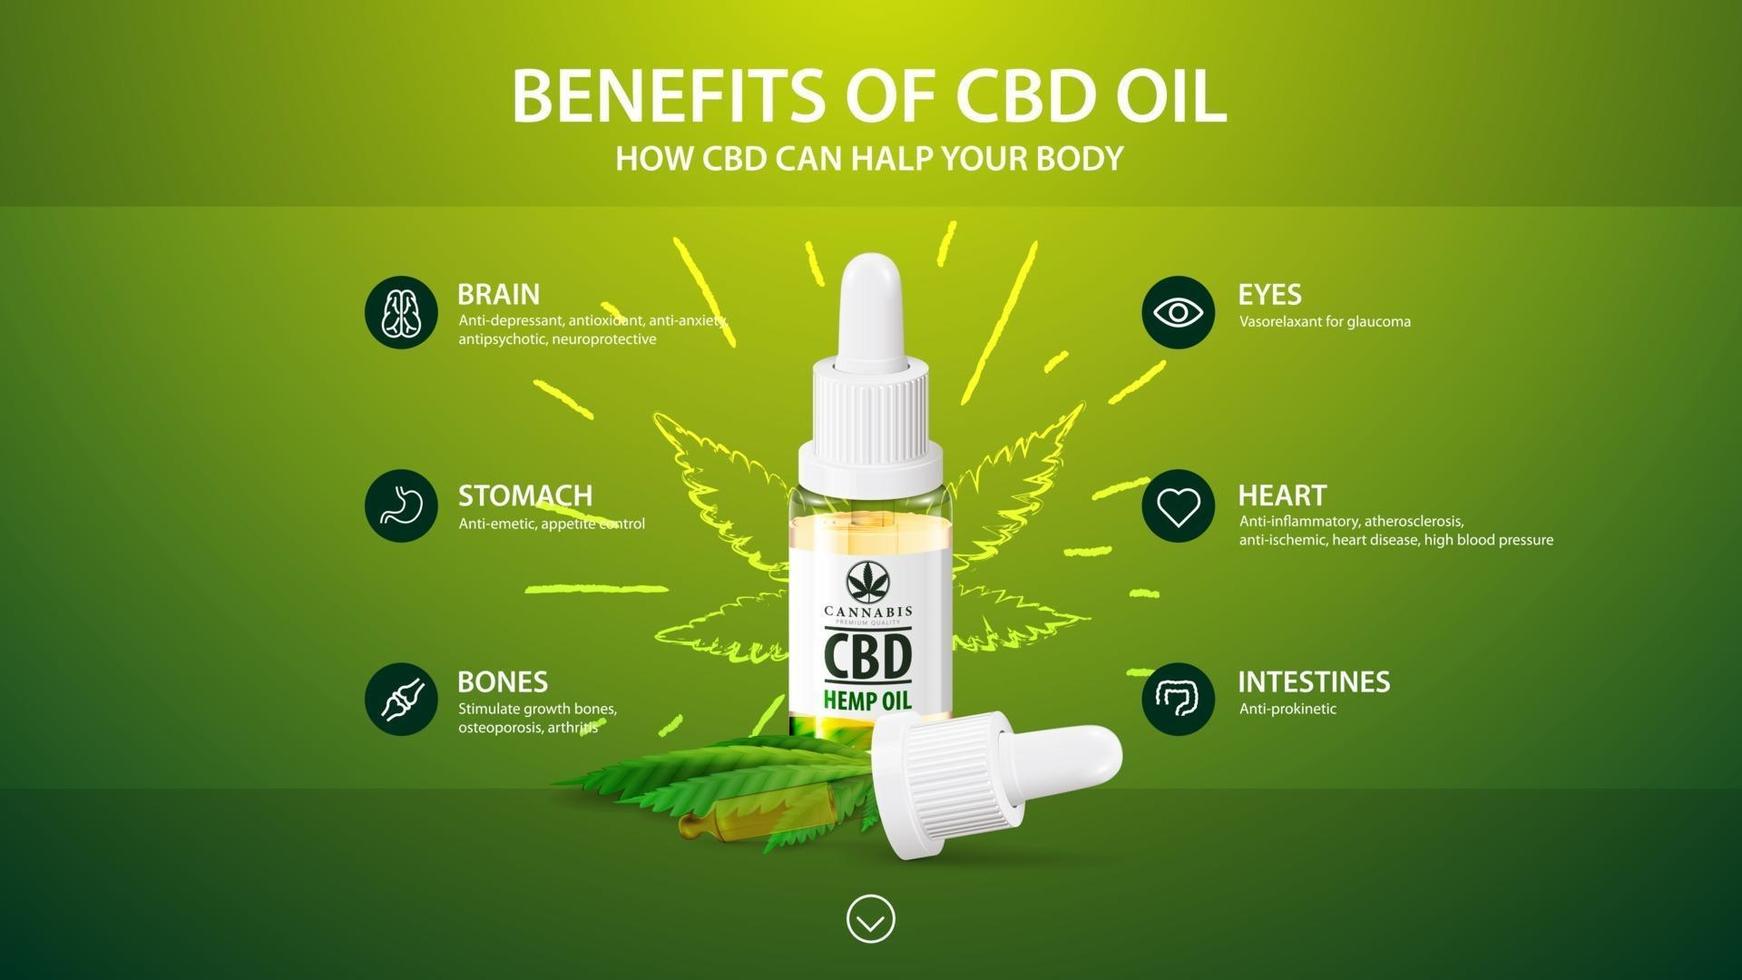 modelo verde com garrafa branca de óleo cbd medicinal, modelo verde com infográfico dos benefícios para a saúde do cbd de cannabis, cânhamo, maconha vetor